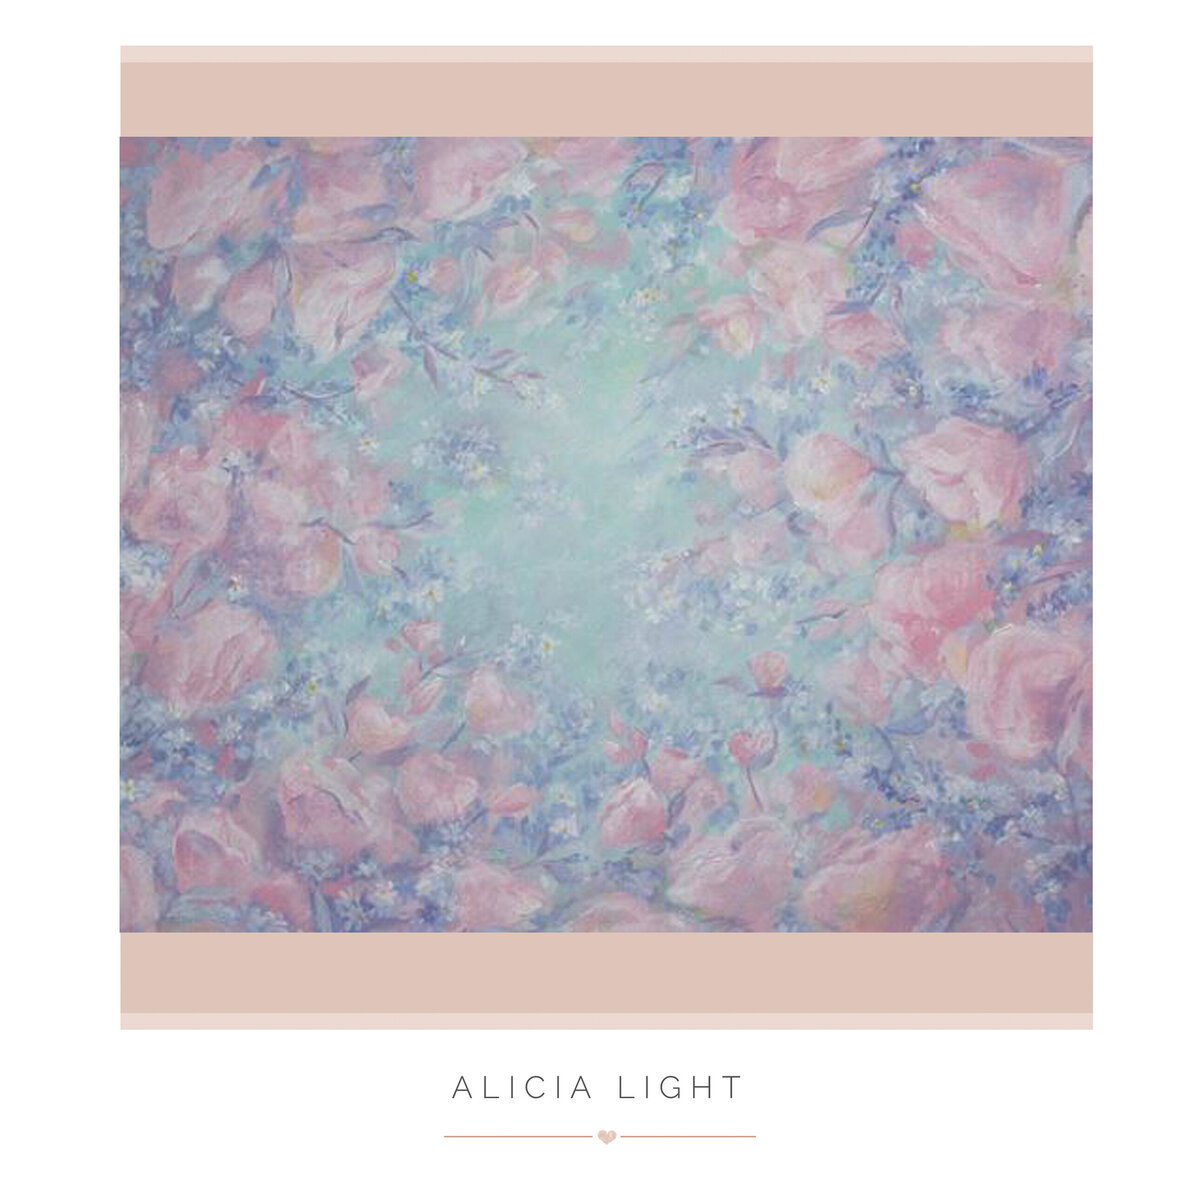 Alicia Light